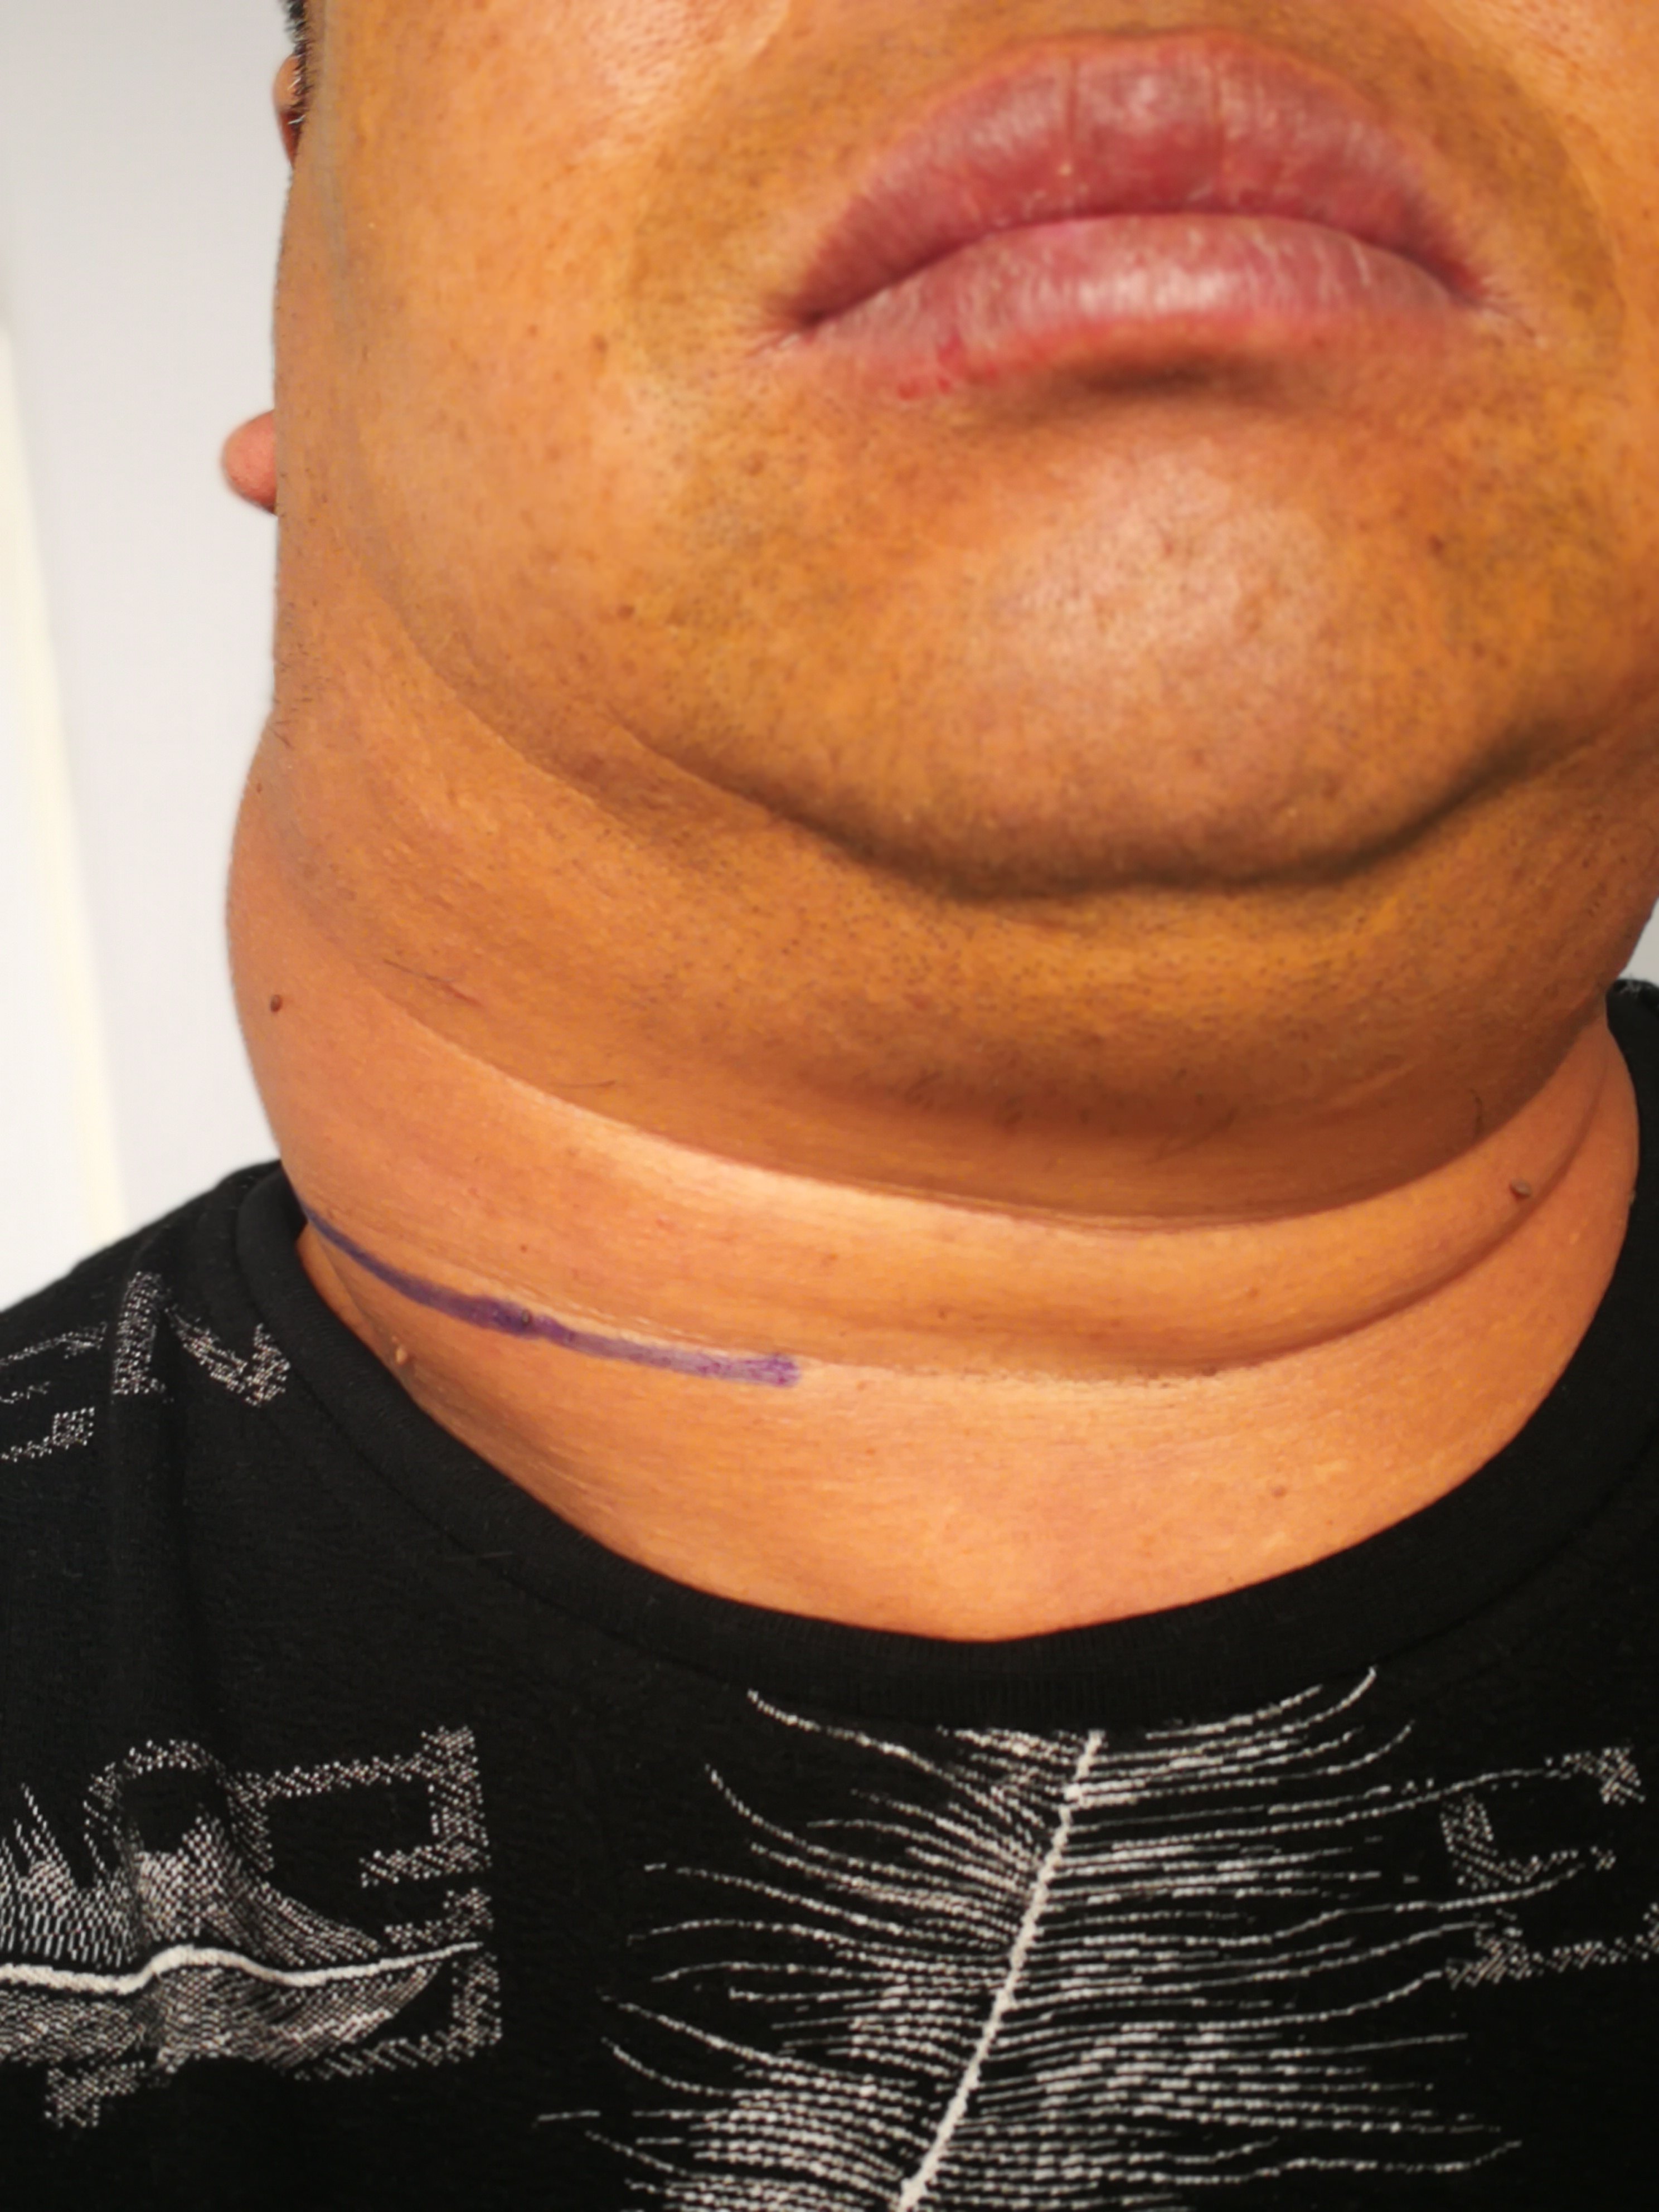 颈部巨大脂肪瘤手术